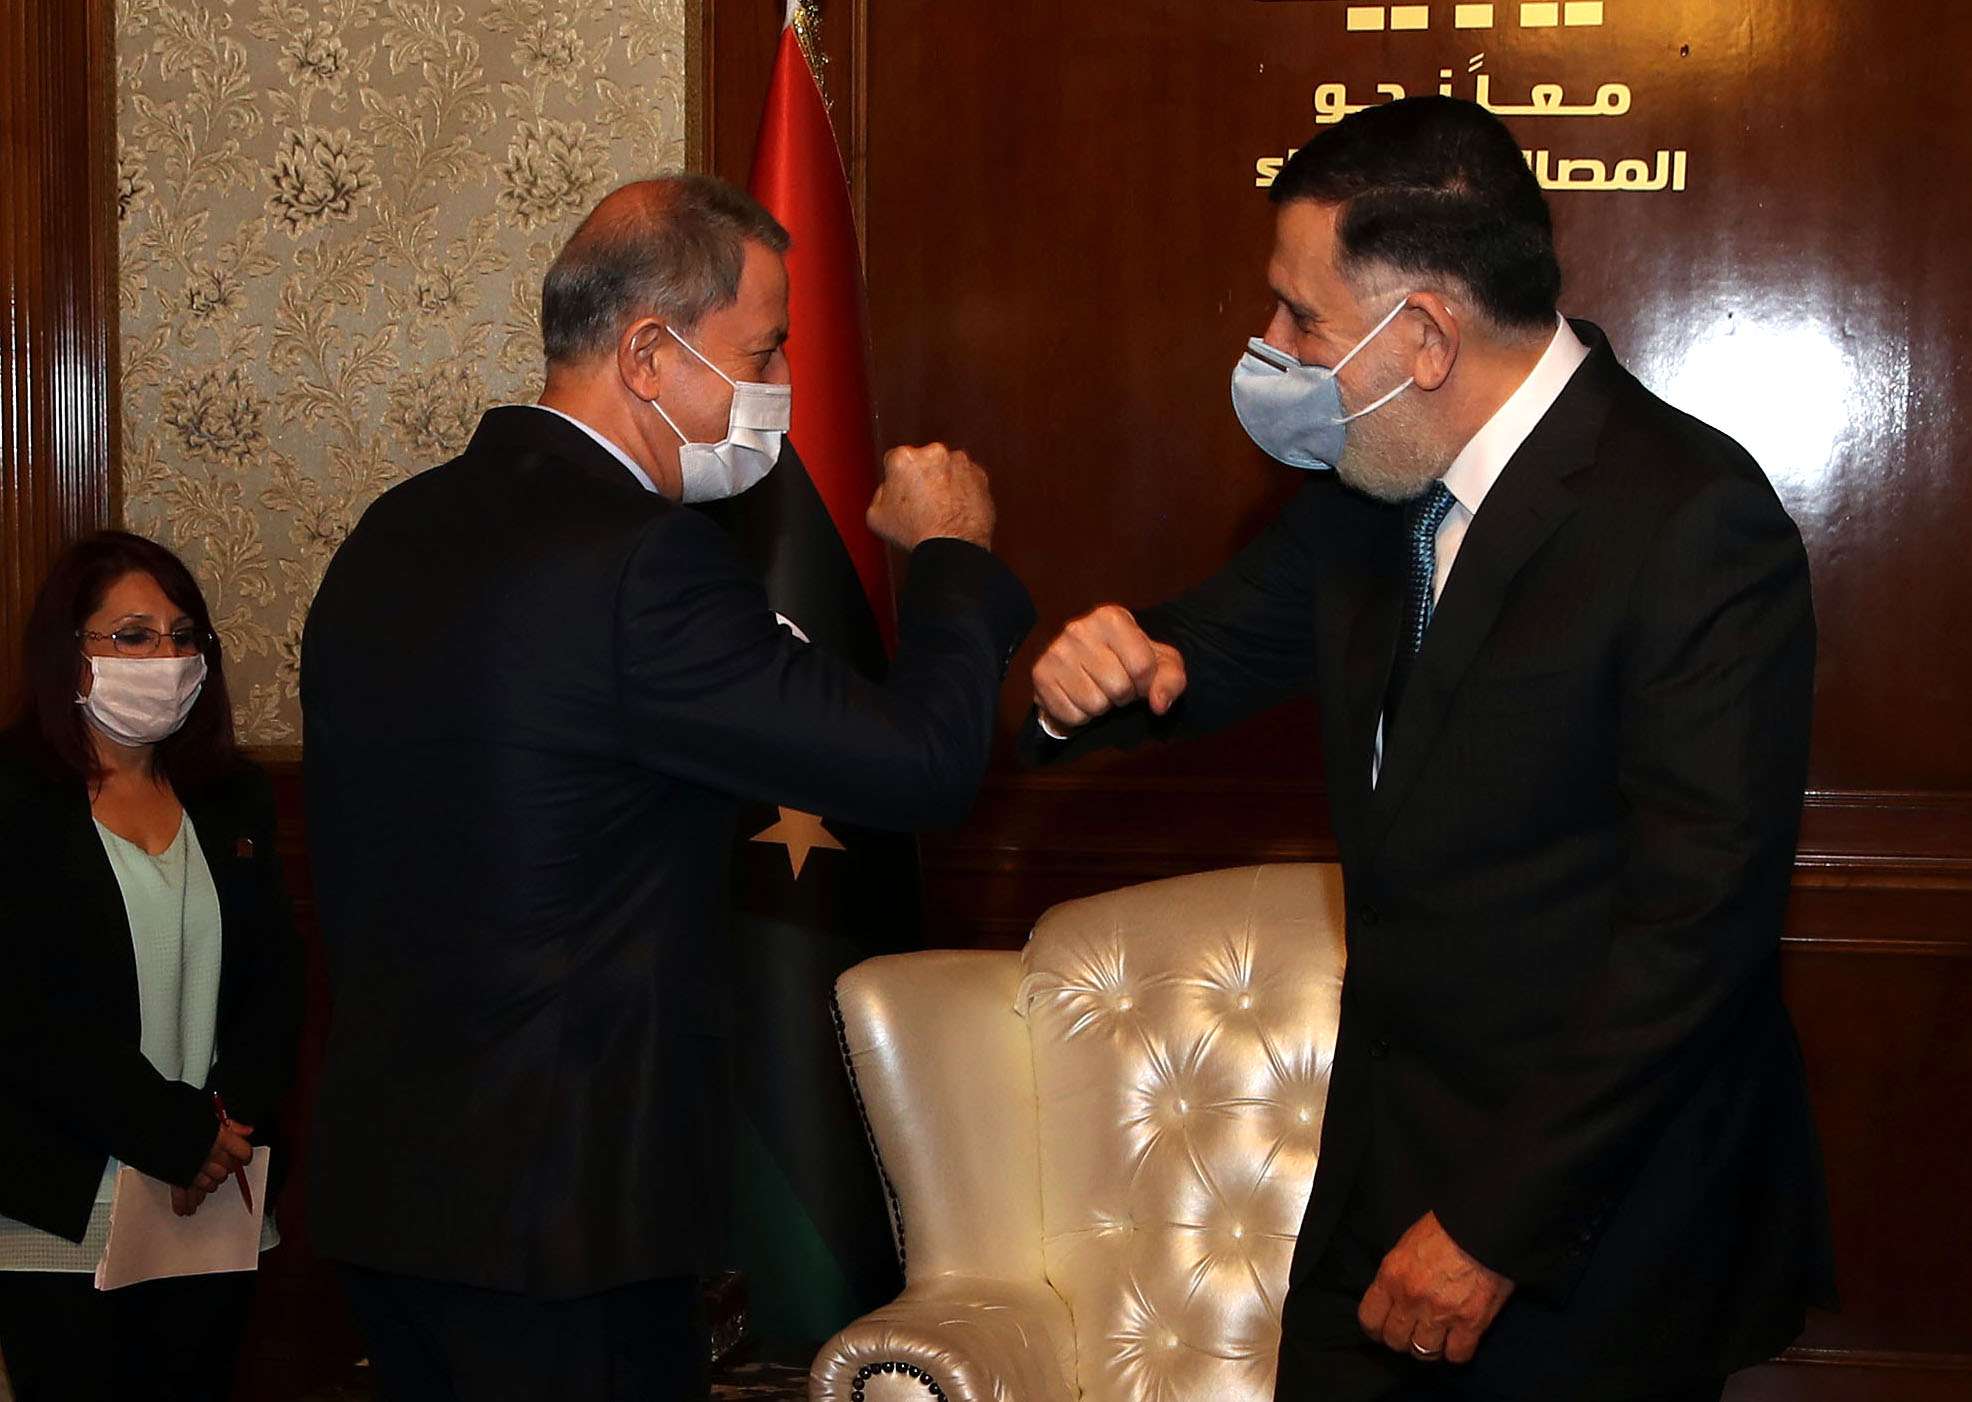 Ο Ακάρ μαζί με τον αρχηγό των τουρκικών ΕΔ στη Λιβύη, είδαν τον Σάρατζ